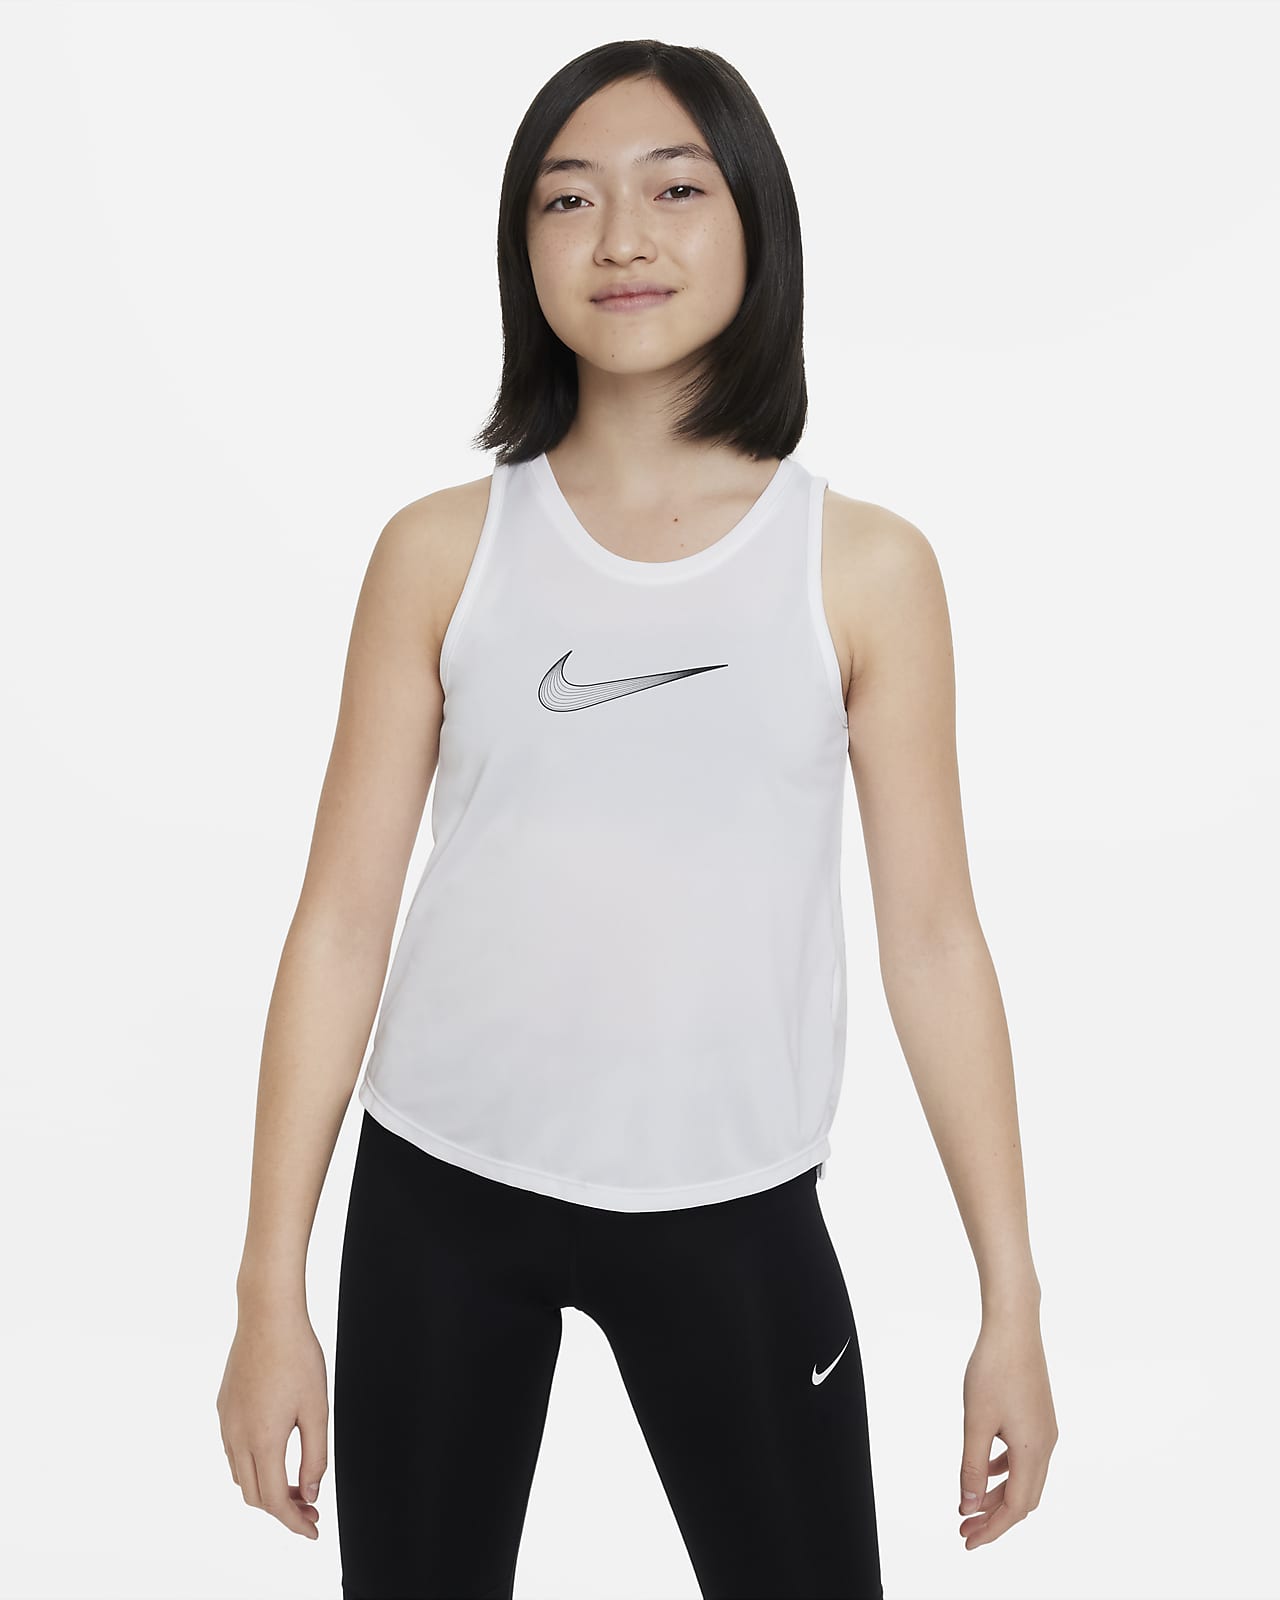 Nike One Dri-FIT trainingstanktop voor meisjes